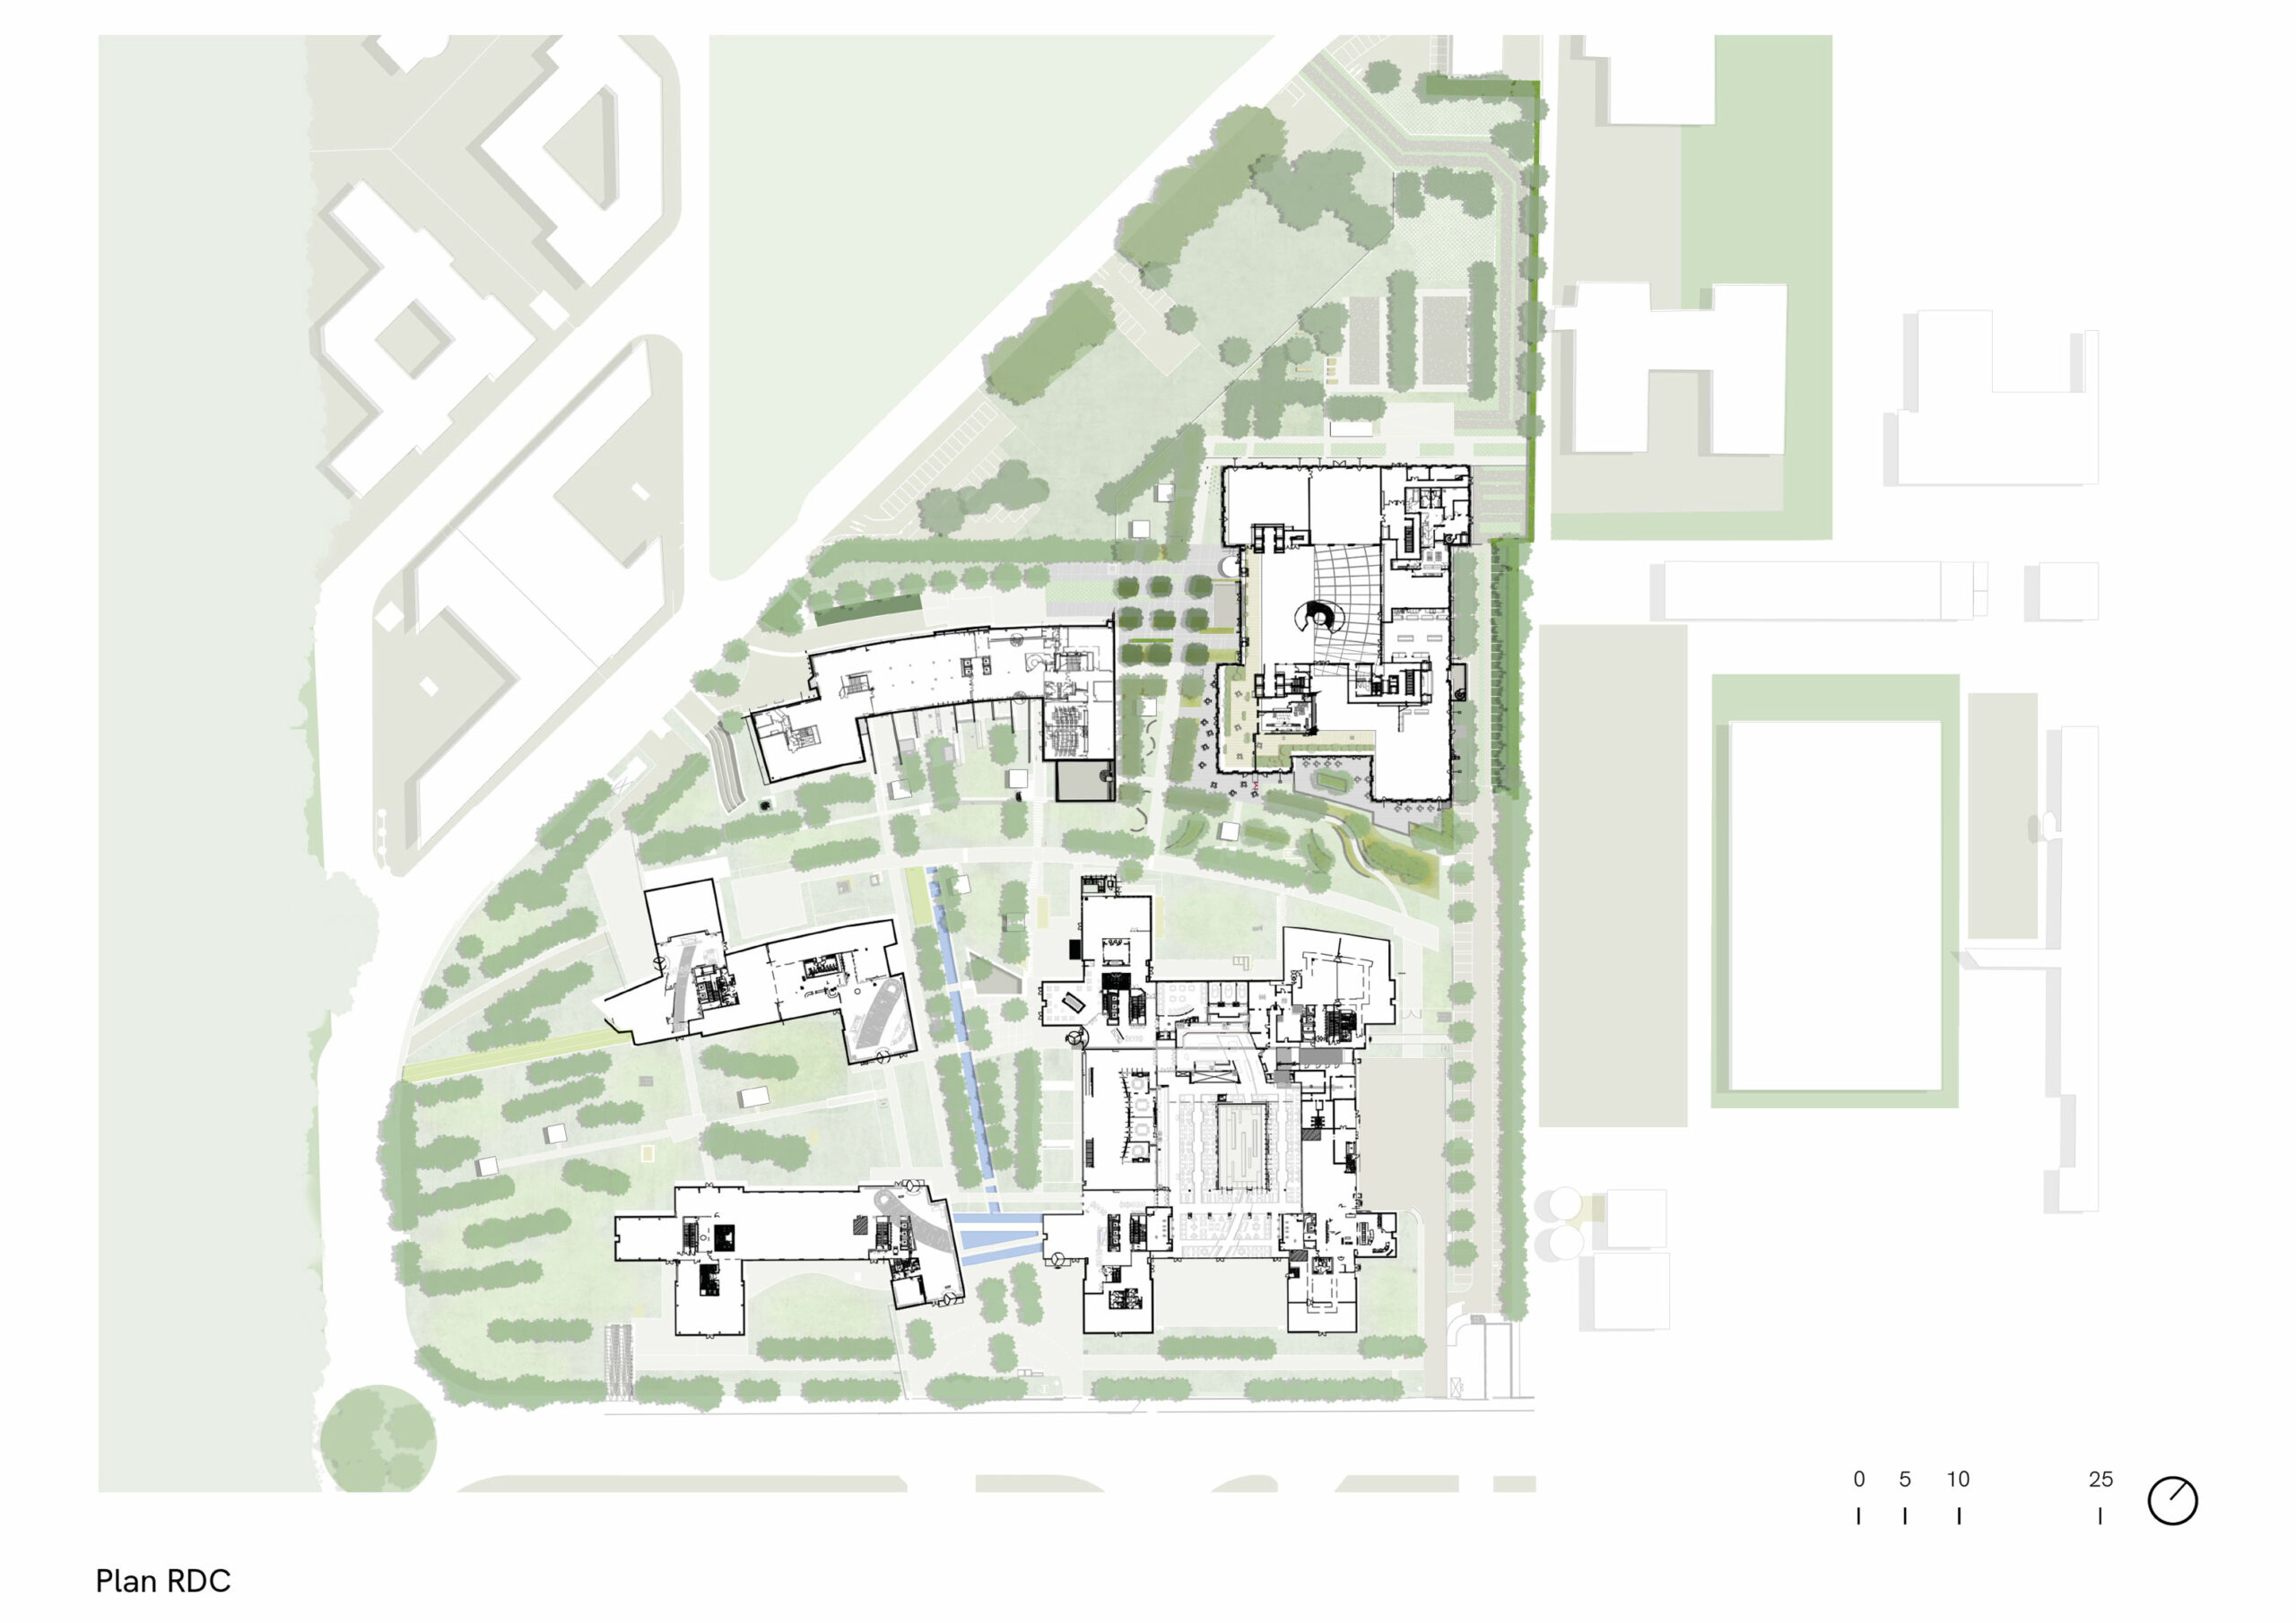 Campus Dassault Systemes, Vélizy, ground floor blueprint